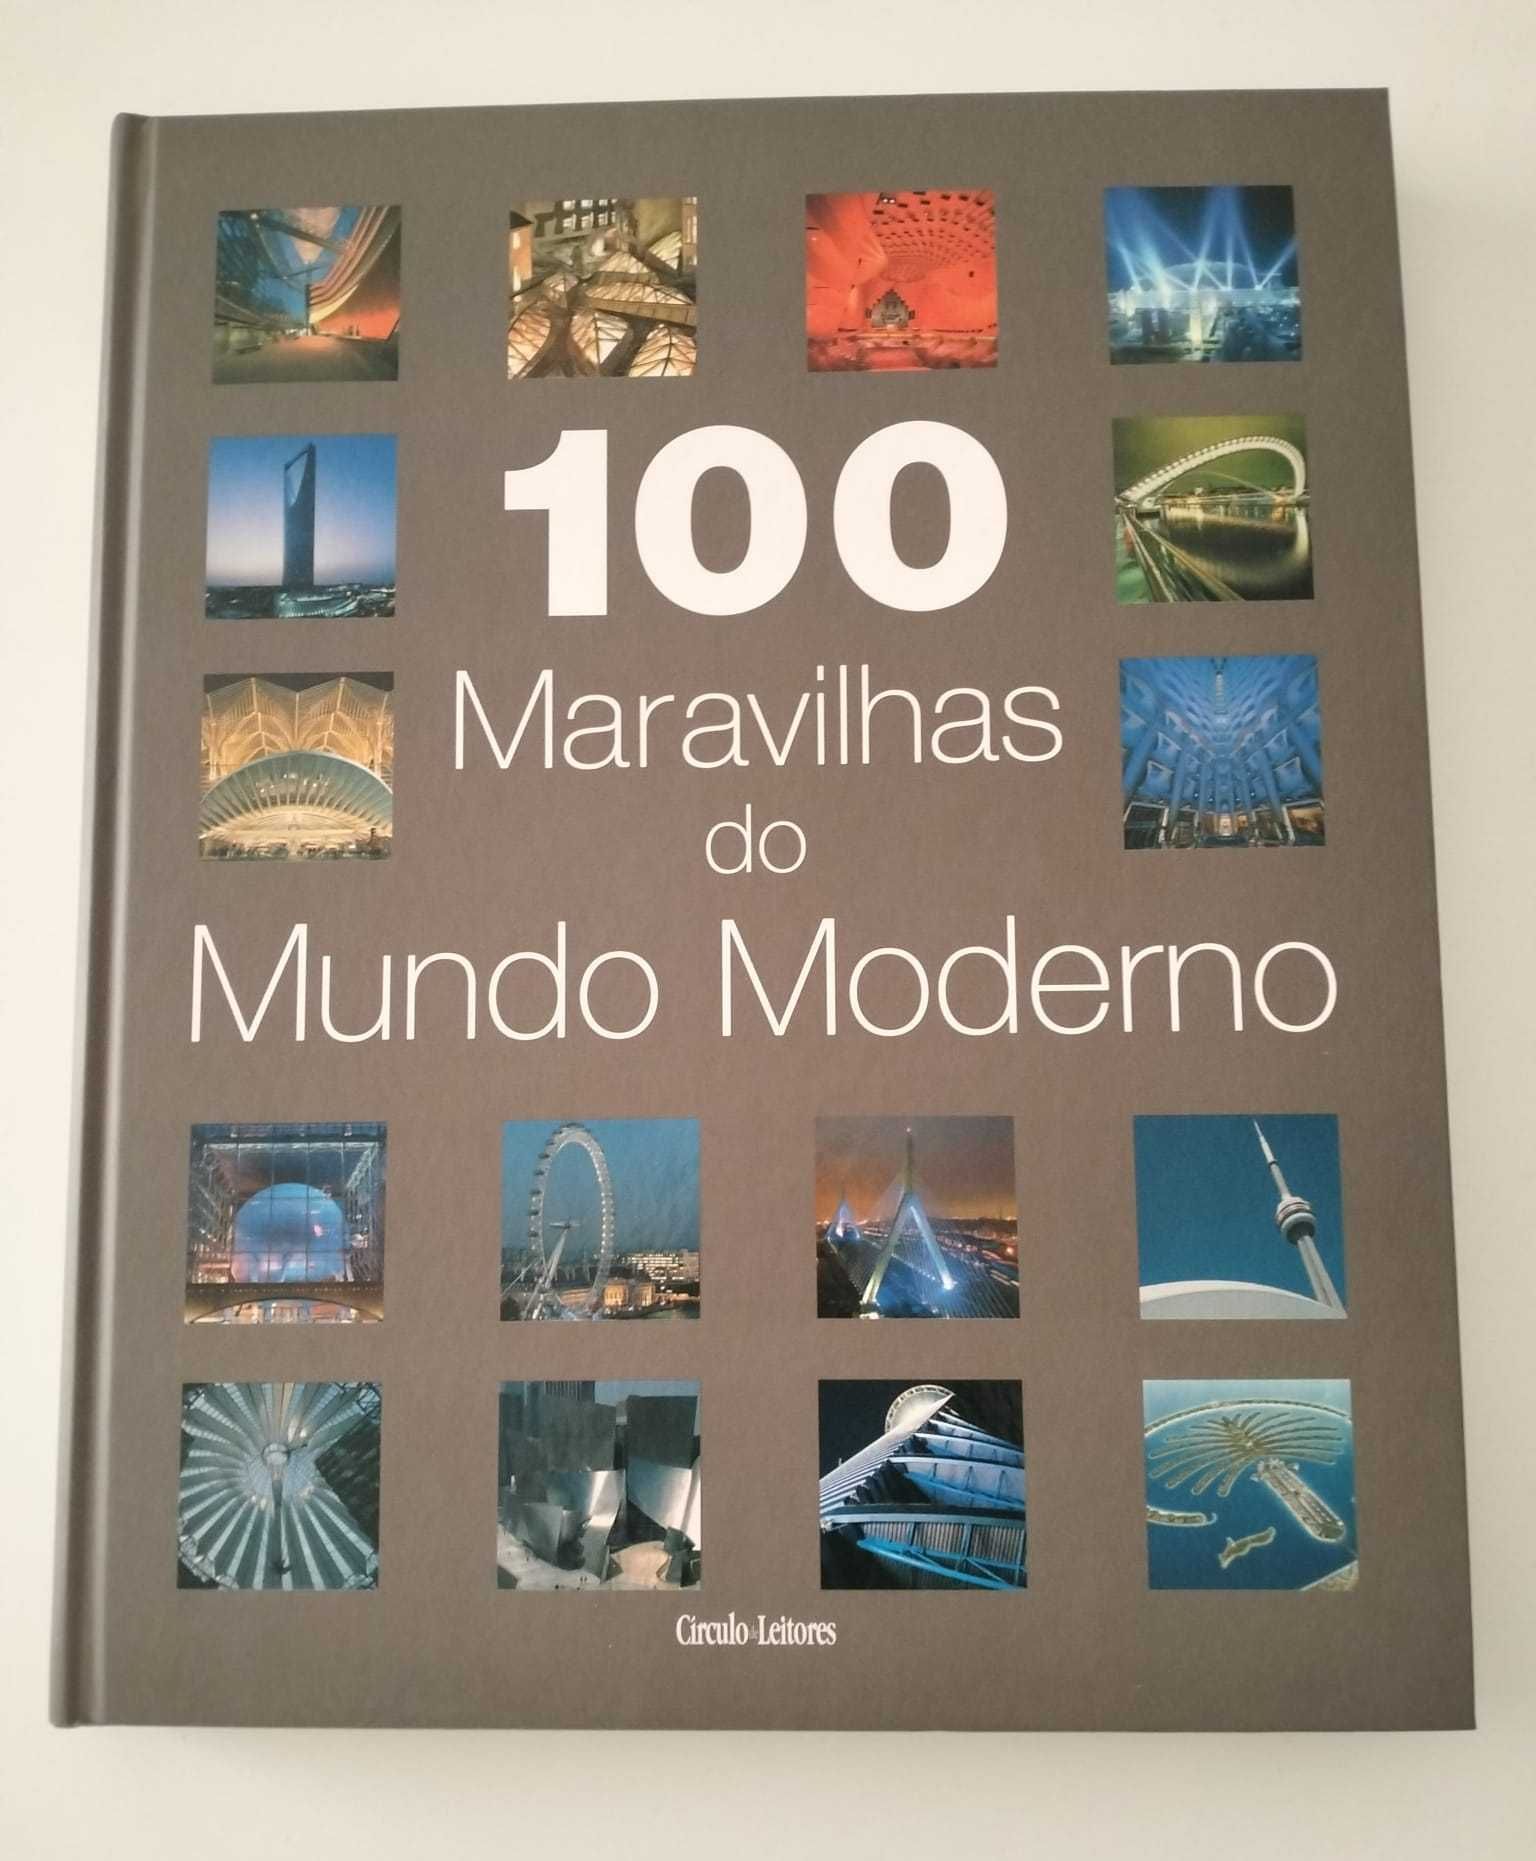 Livro "100 Maravilhas do Mundo Moderno" - Vários Autores